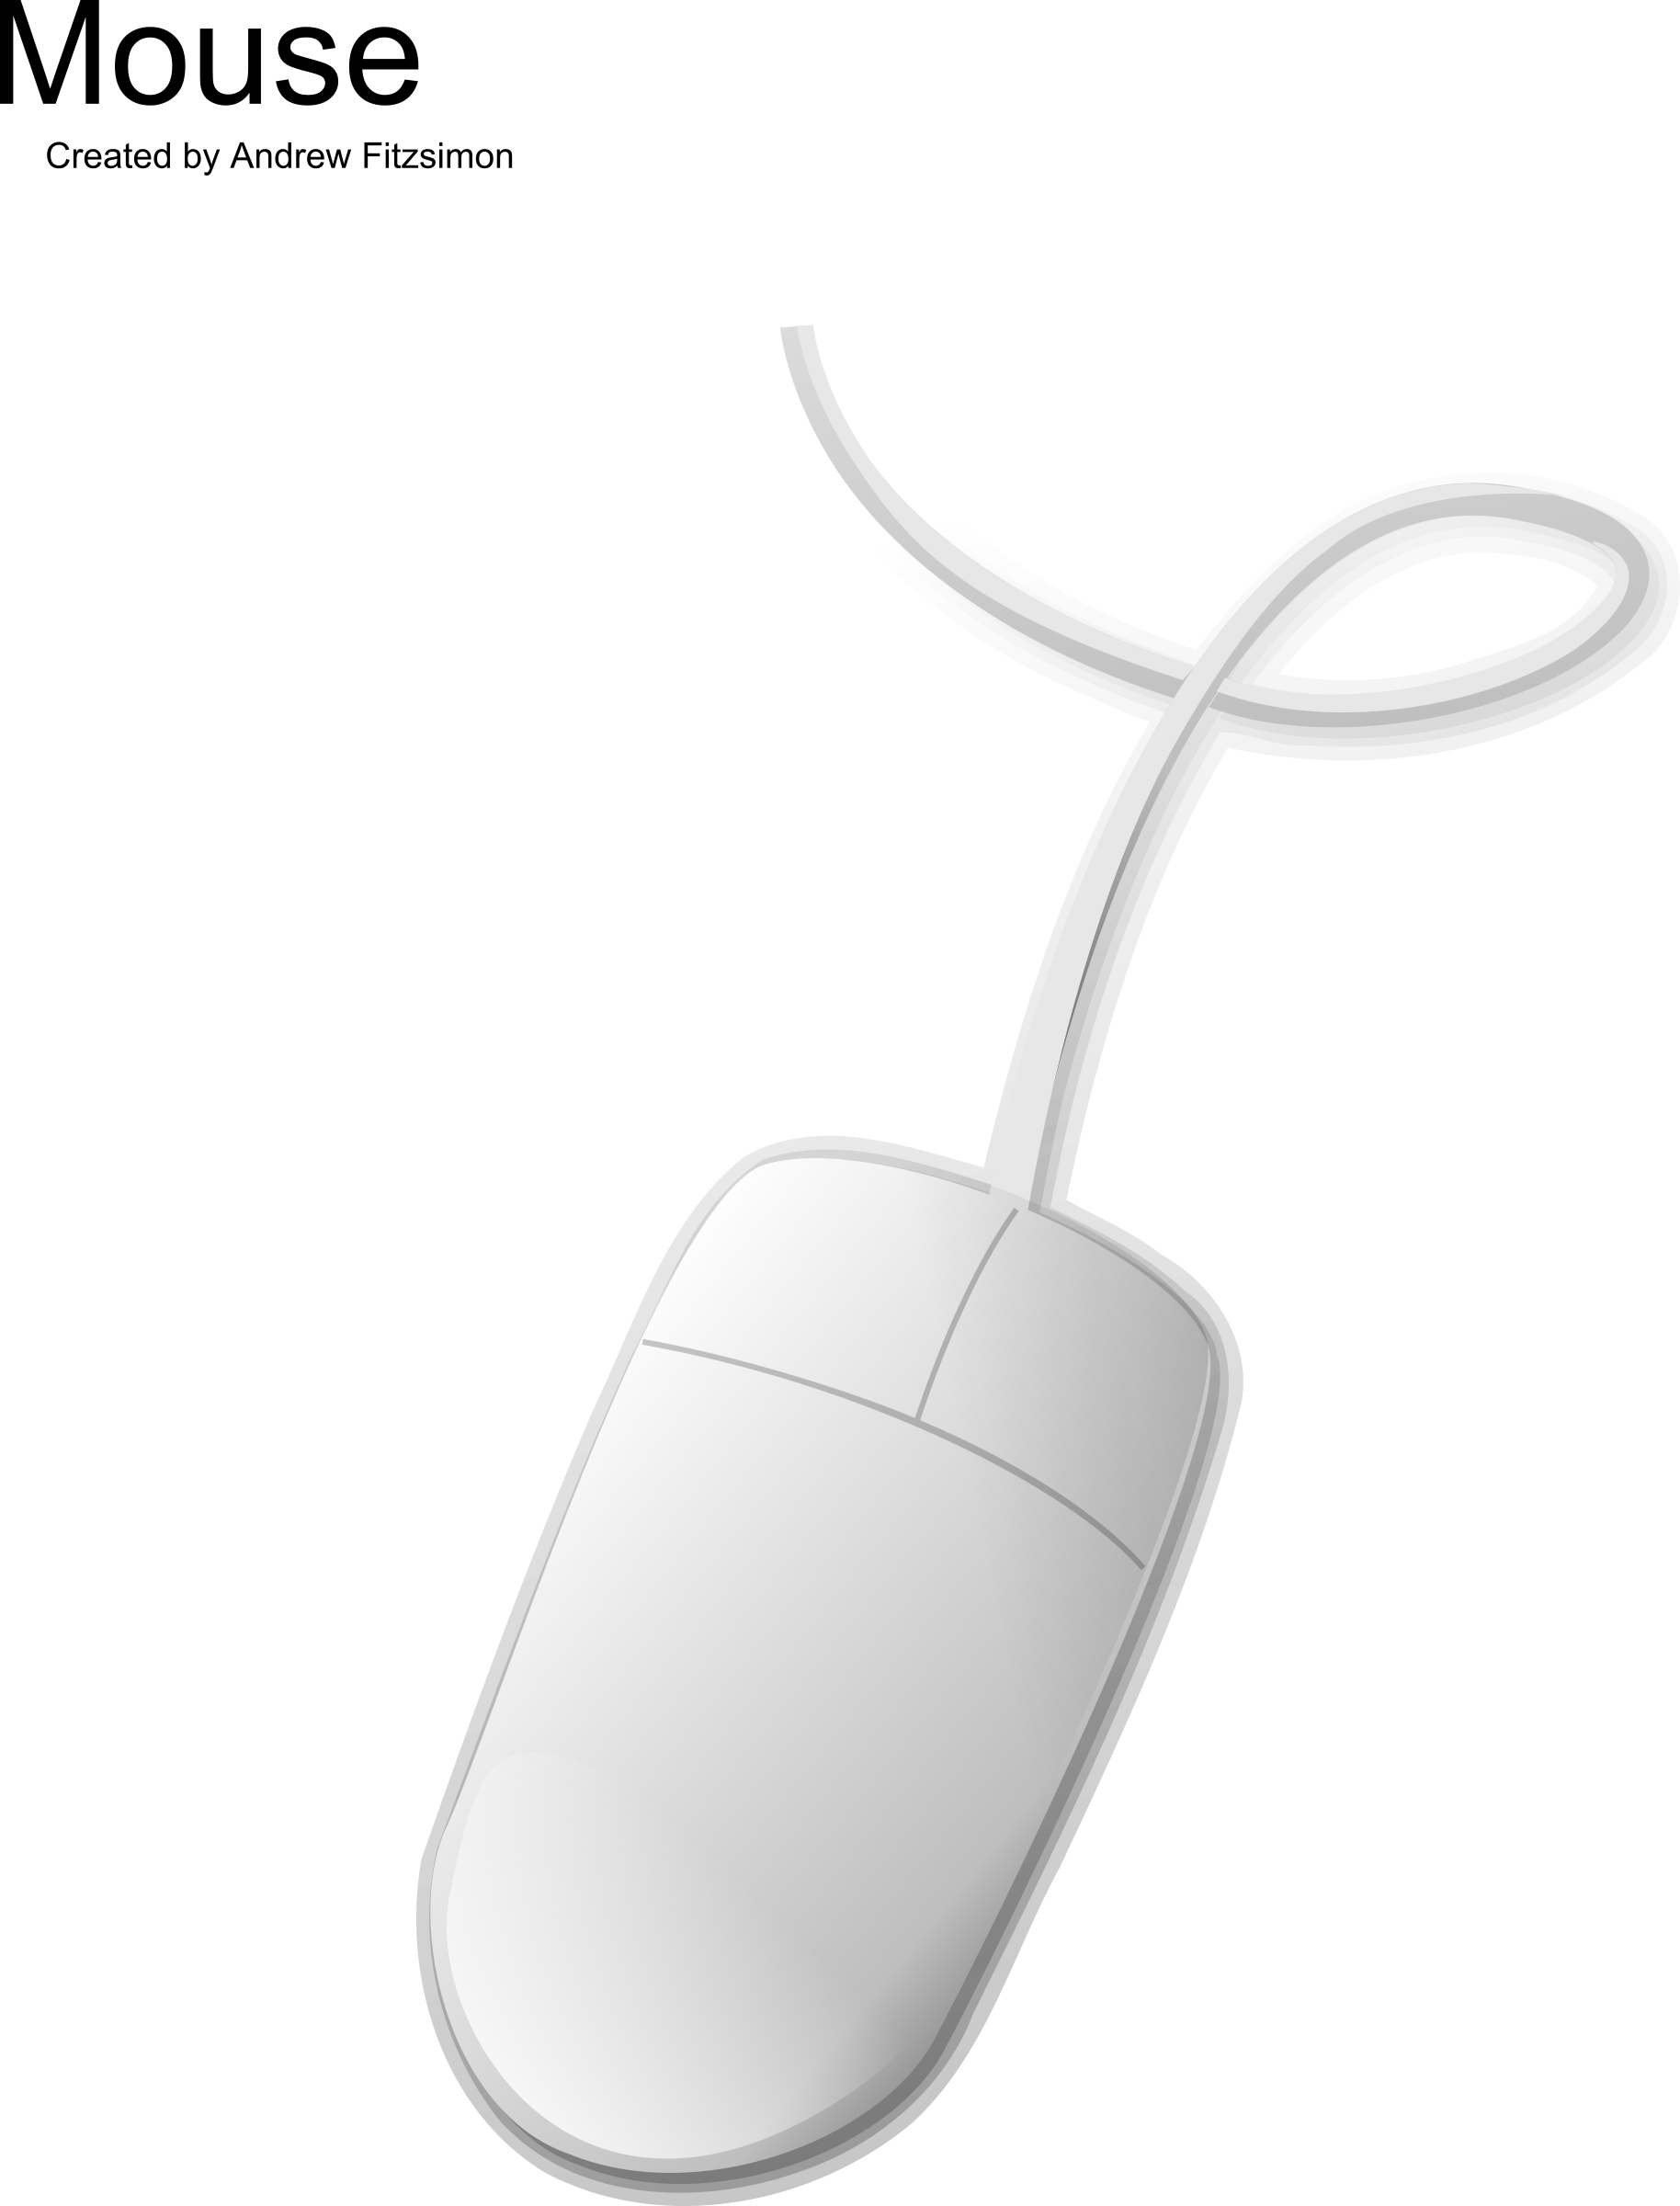 PC Mouse Transparent